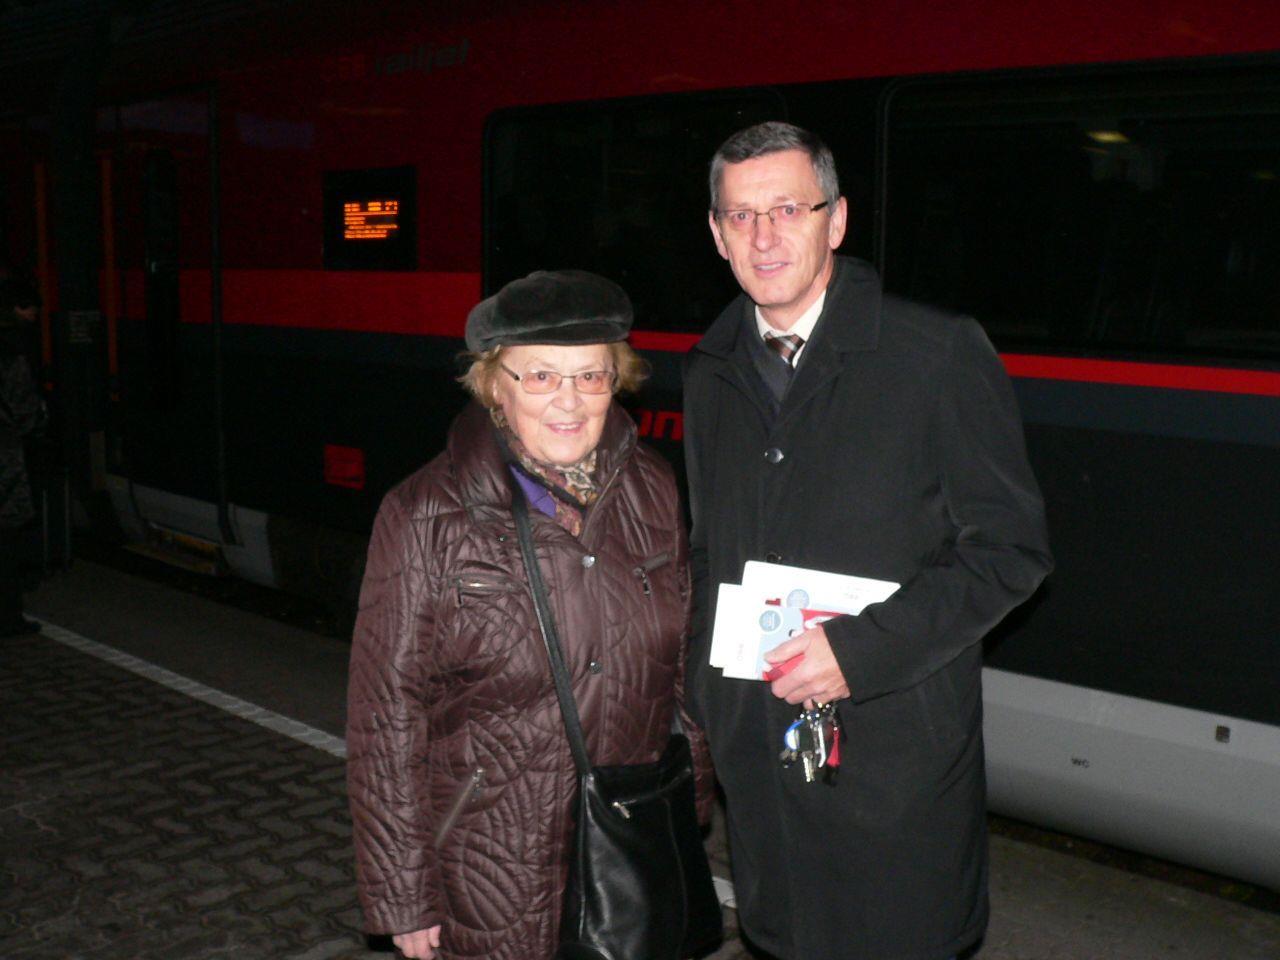 Vorarlbergs ÖBB Regionalmanager Gerhard Mayer überreichte der überglücklichen Erika Schuhmacher aus Bregenz vor dem railjet den Preis